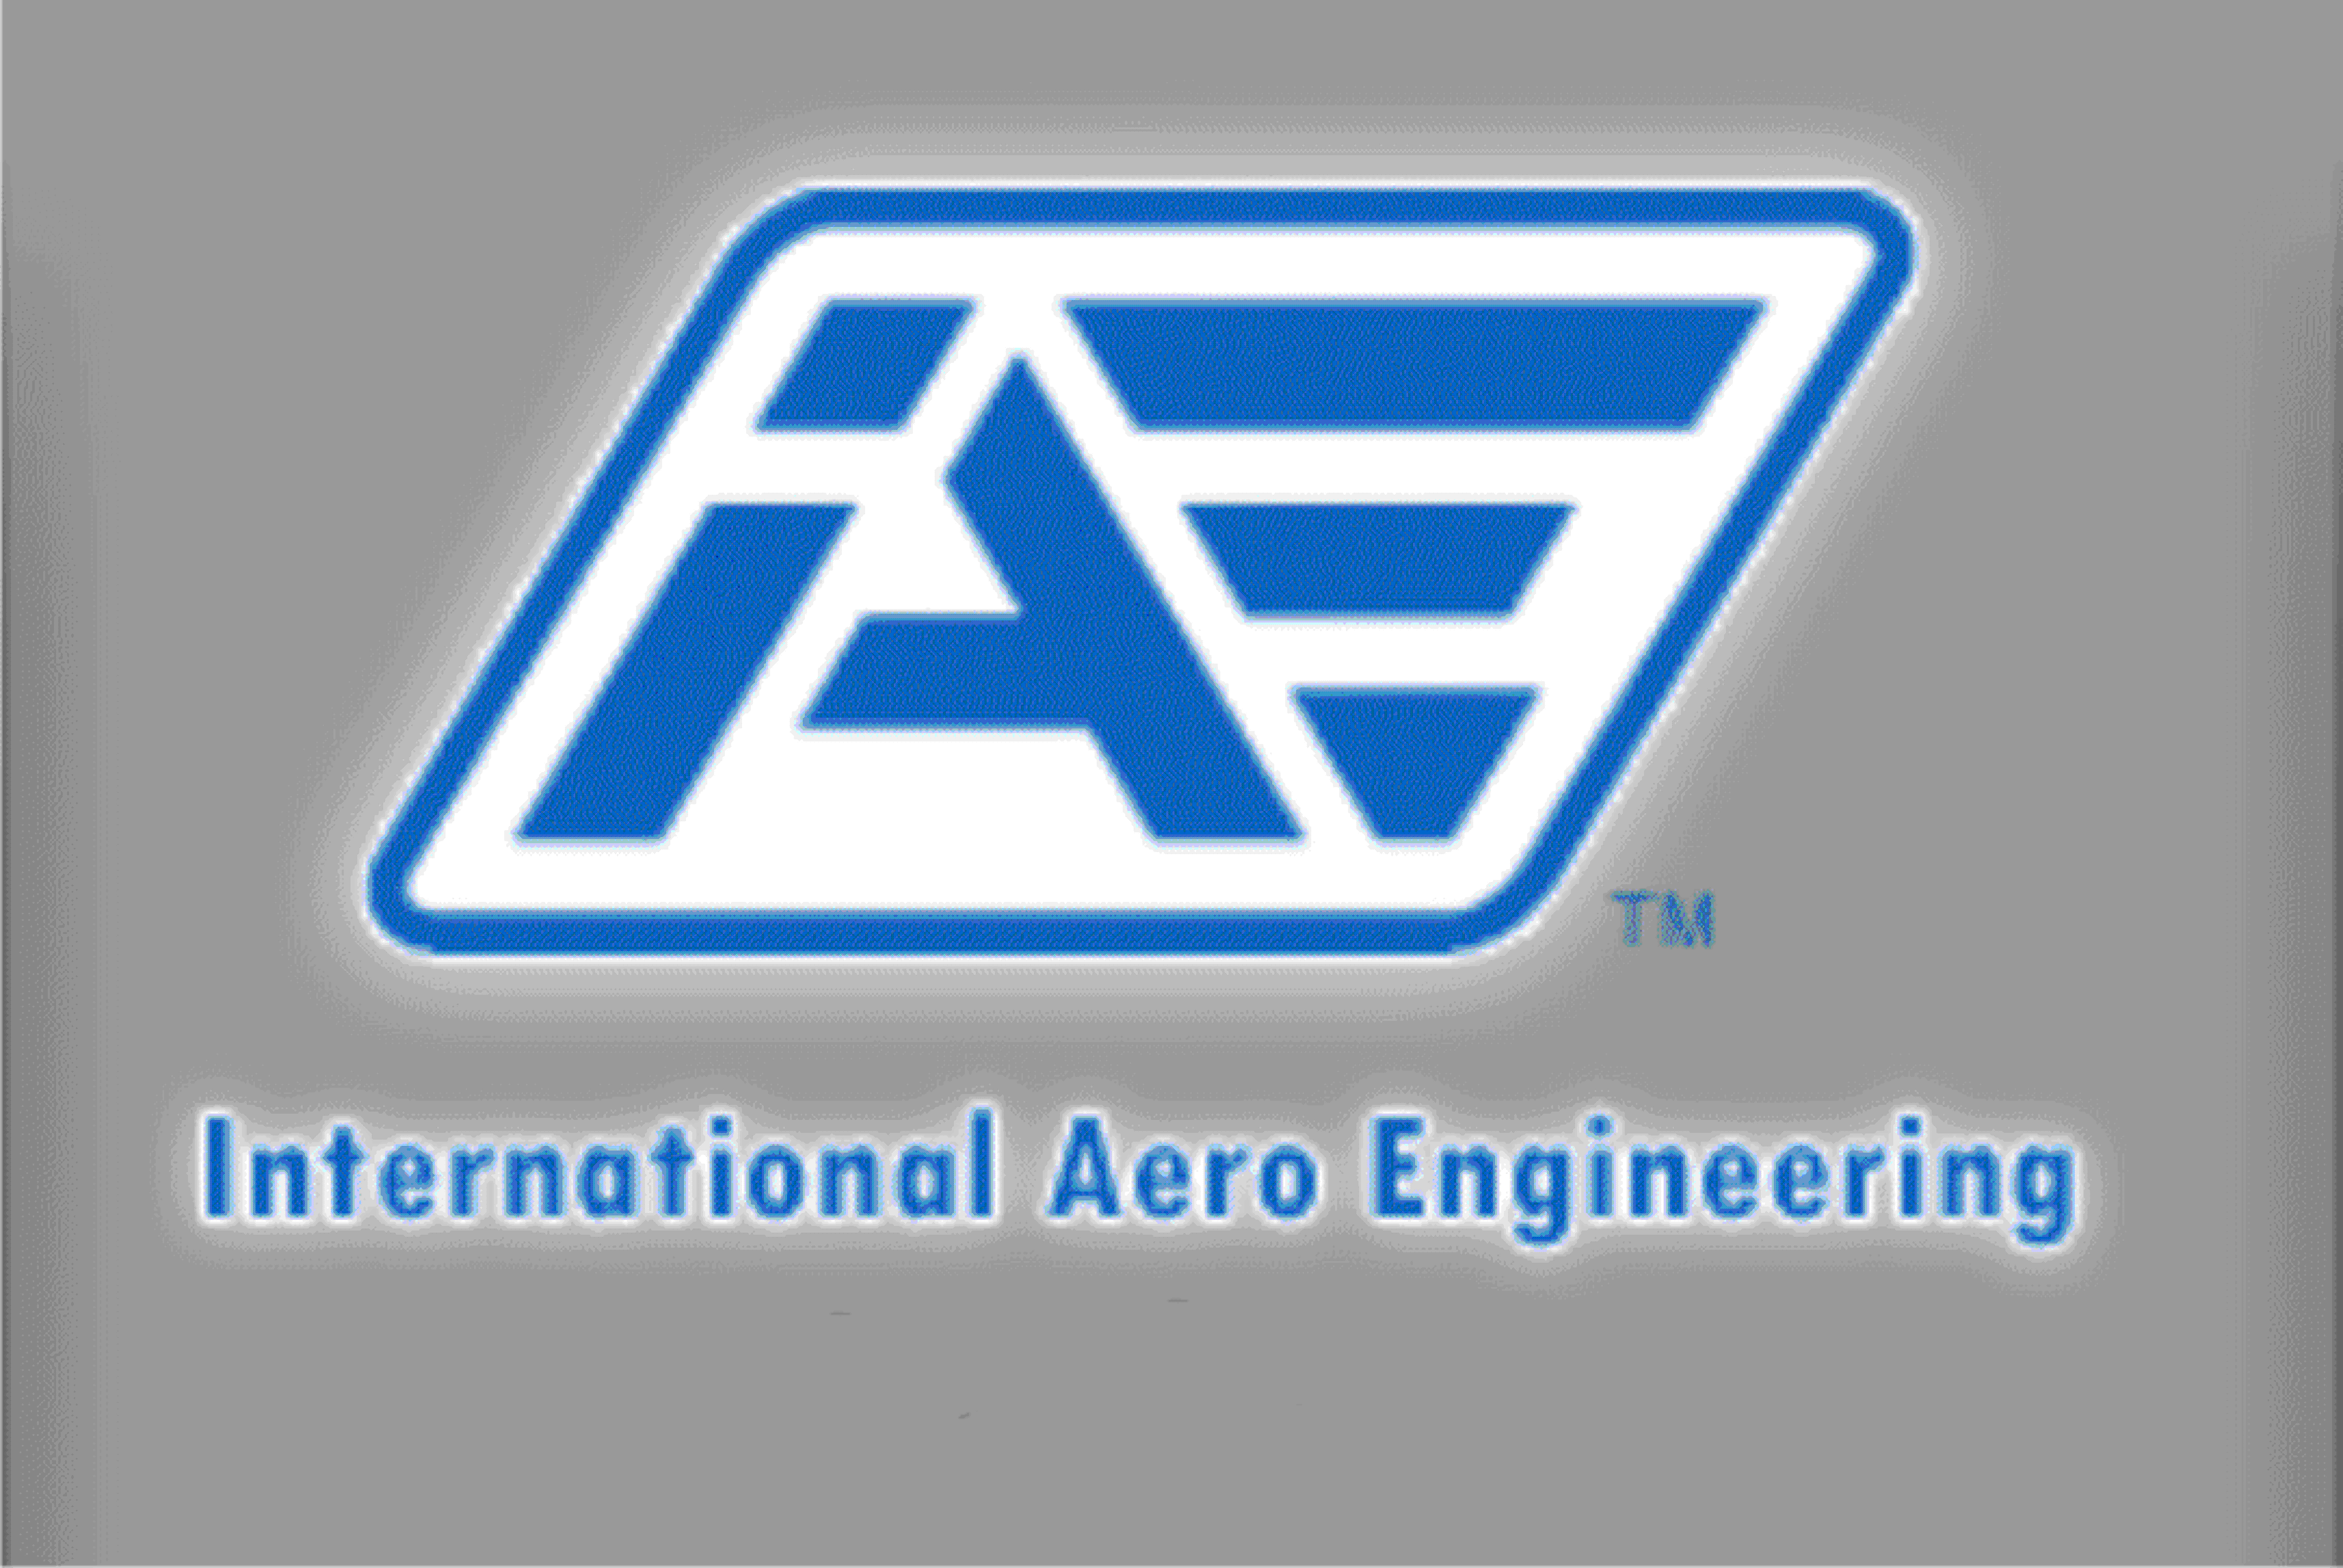 International Aero Engineering